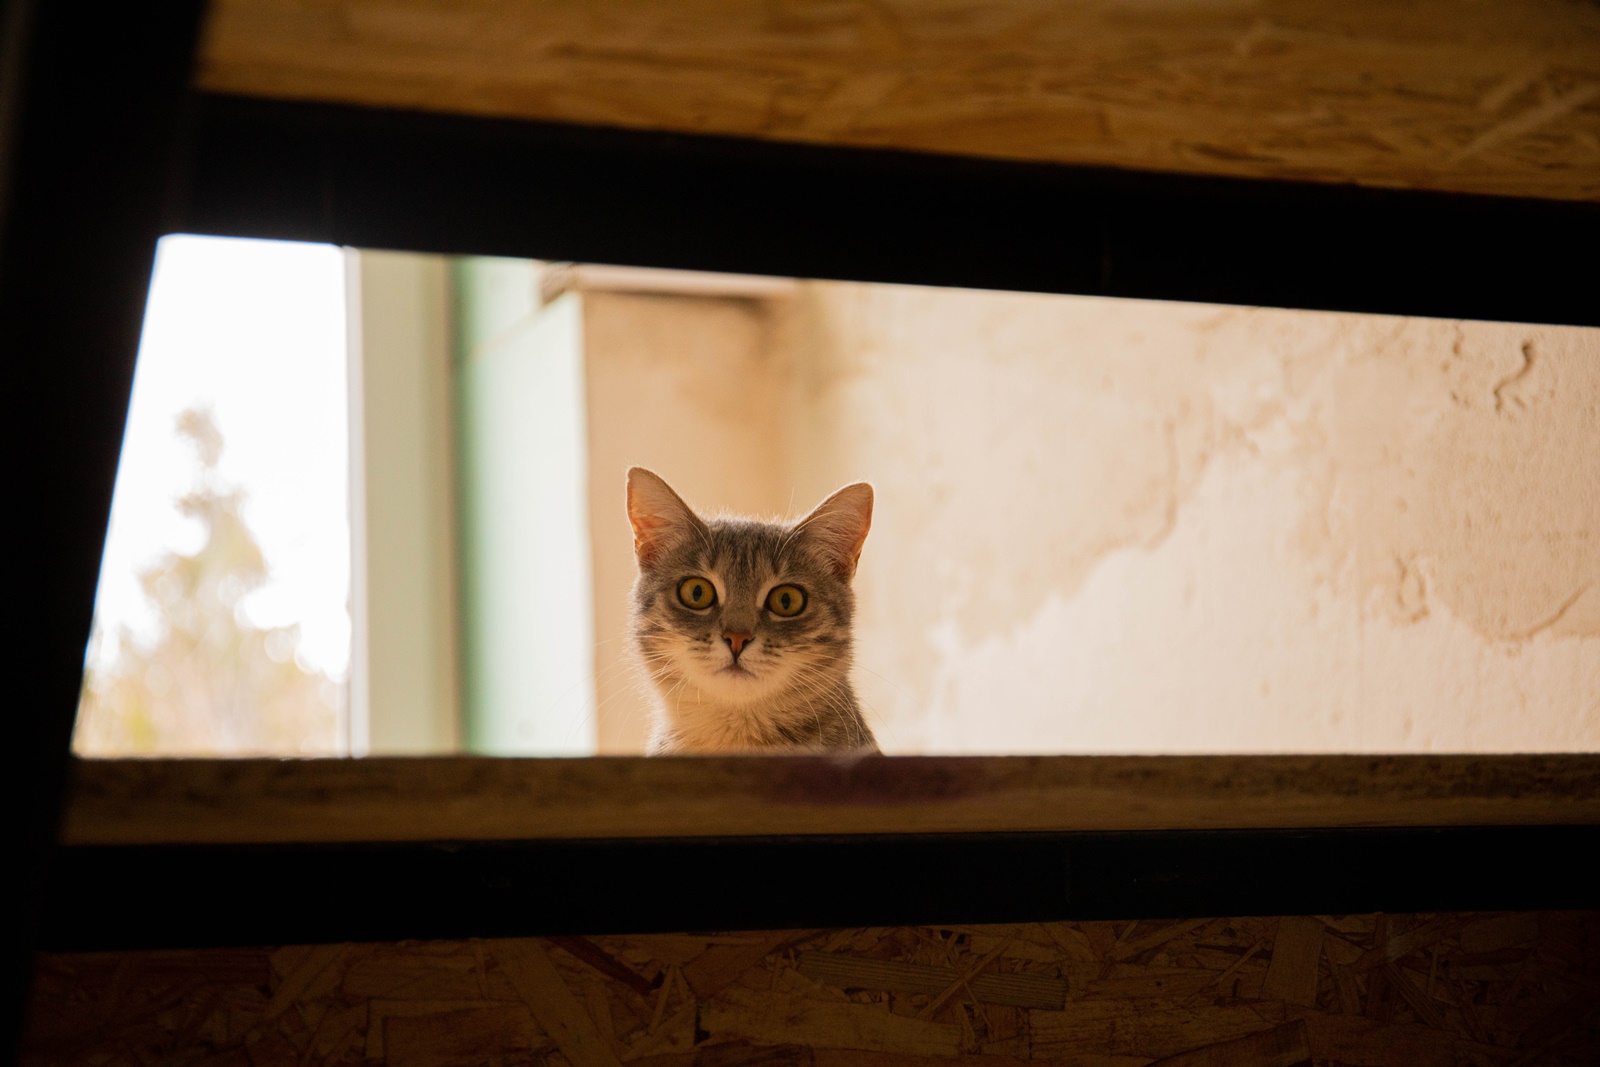 Σκότωσε γάτα: Η σοκαριστική ομολογία 24χρονου στην Πάτρα